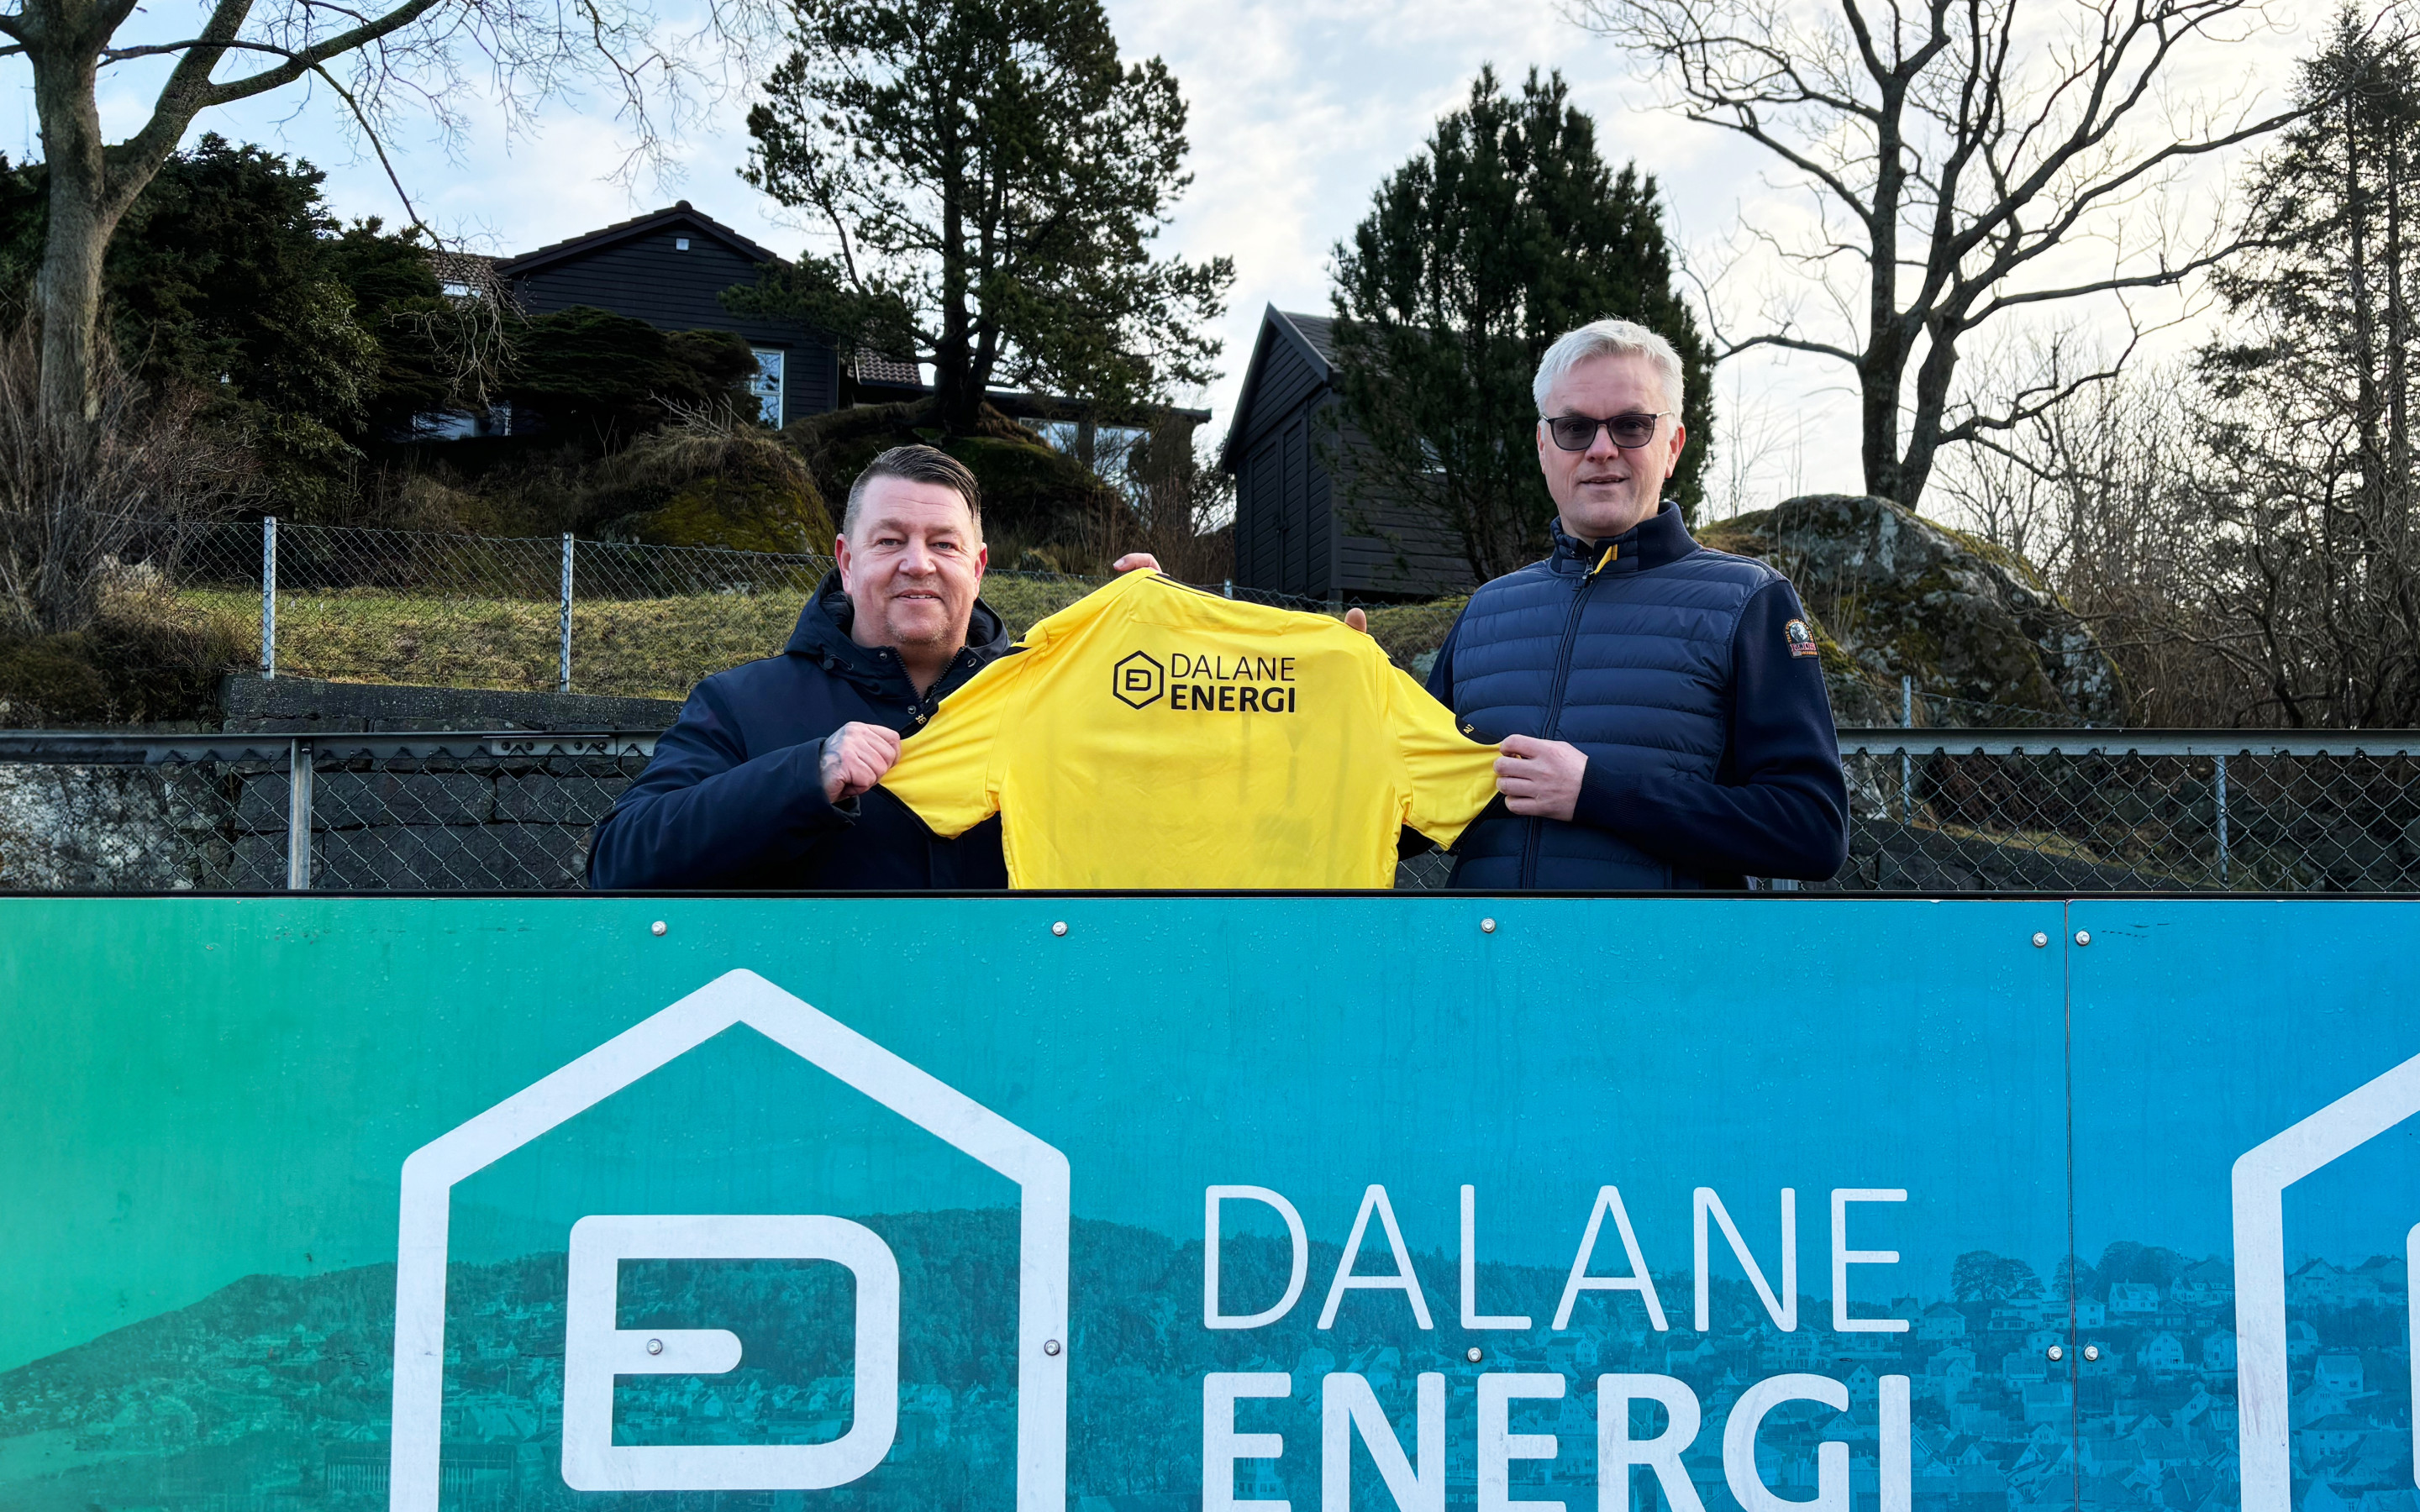 Dalane Energi fortsetter samarbeidet: – Heier på arbeidet EIK Fotball gjør for lokalbefolkningen